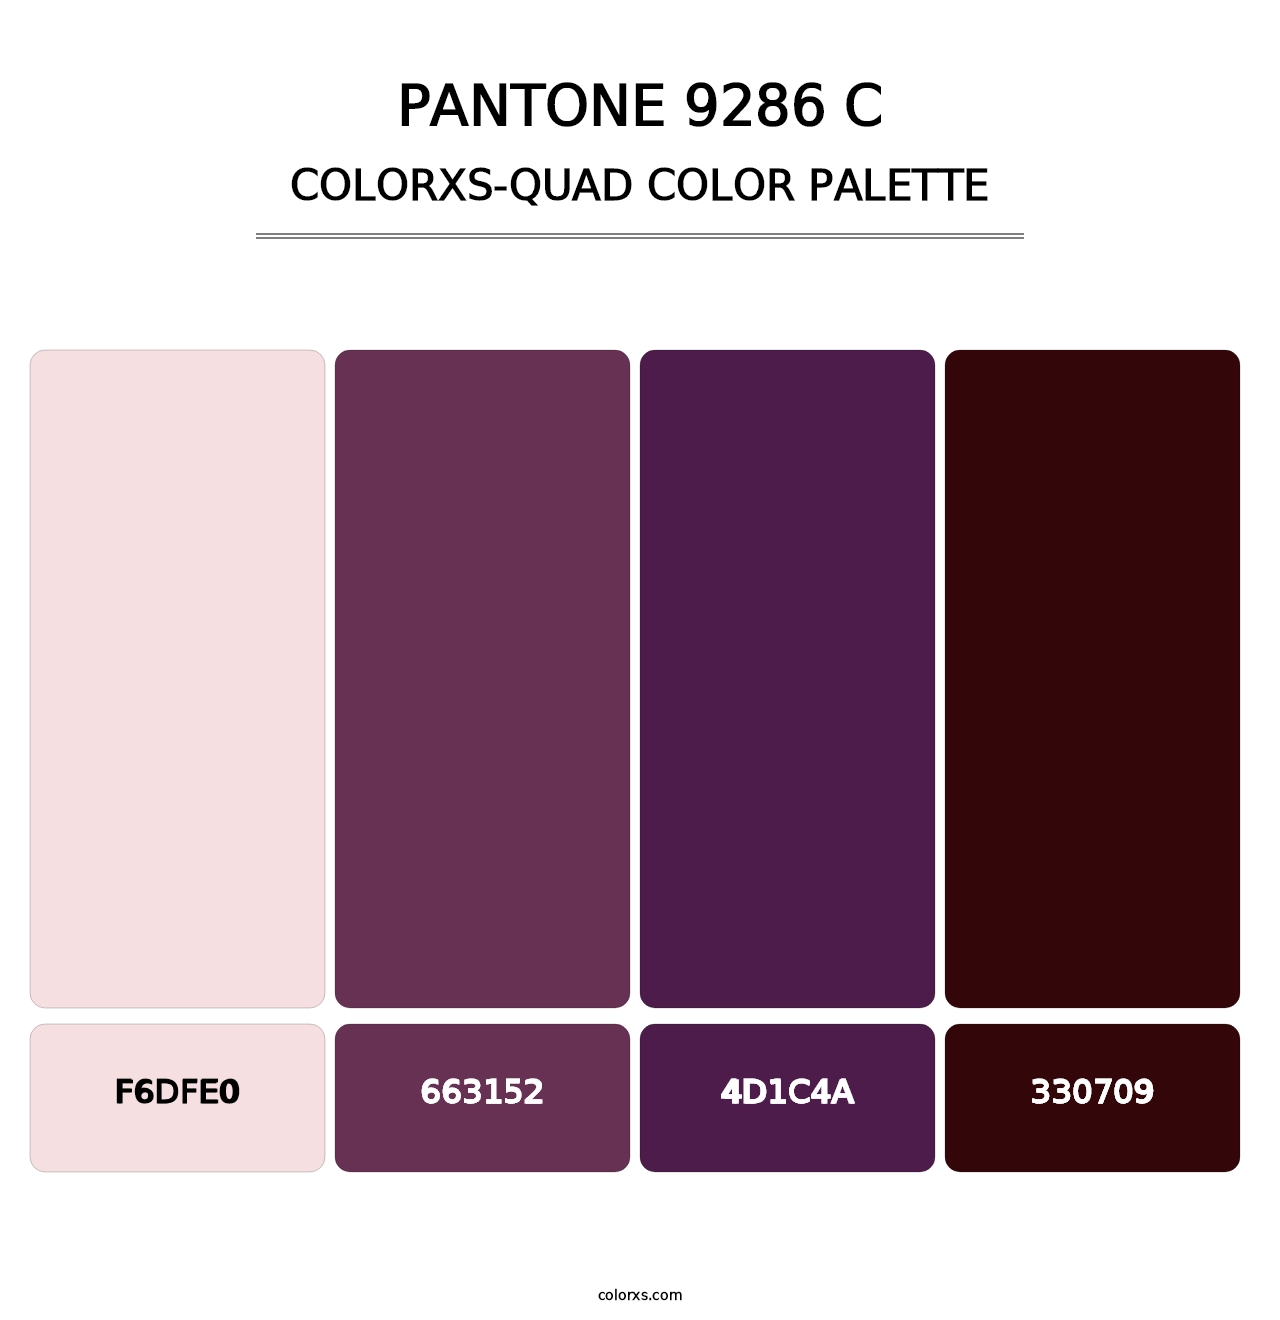 PANTONE 9286 C - Colorxs Quad Palette